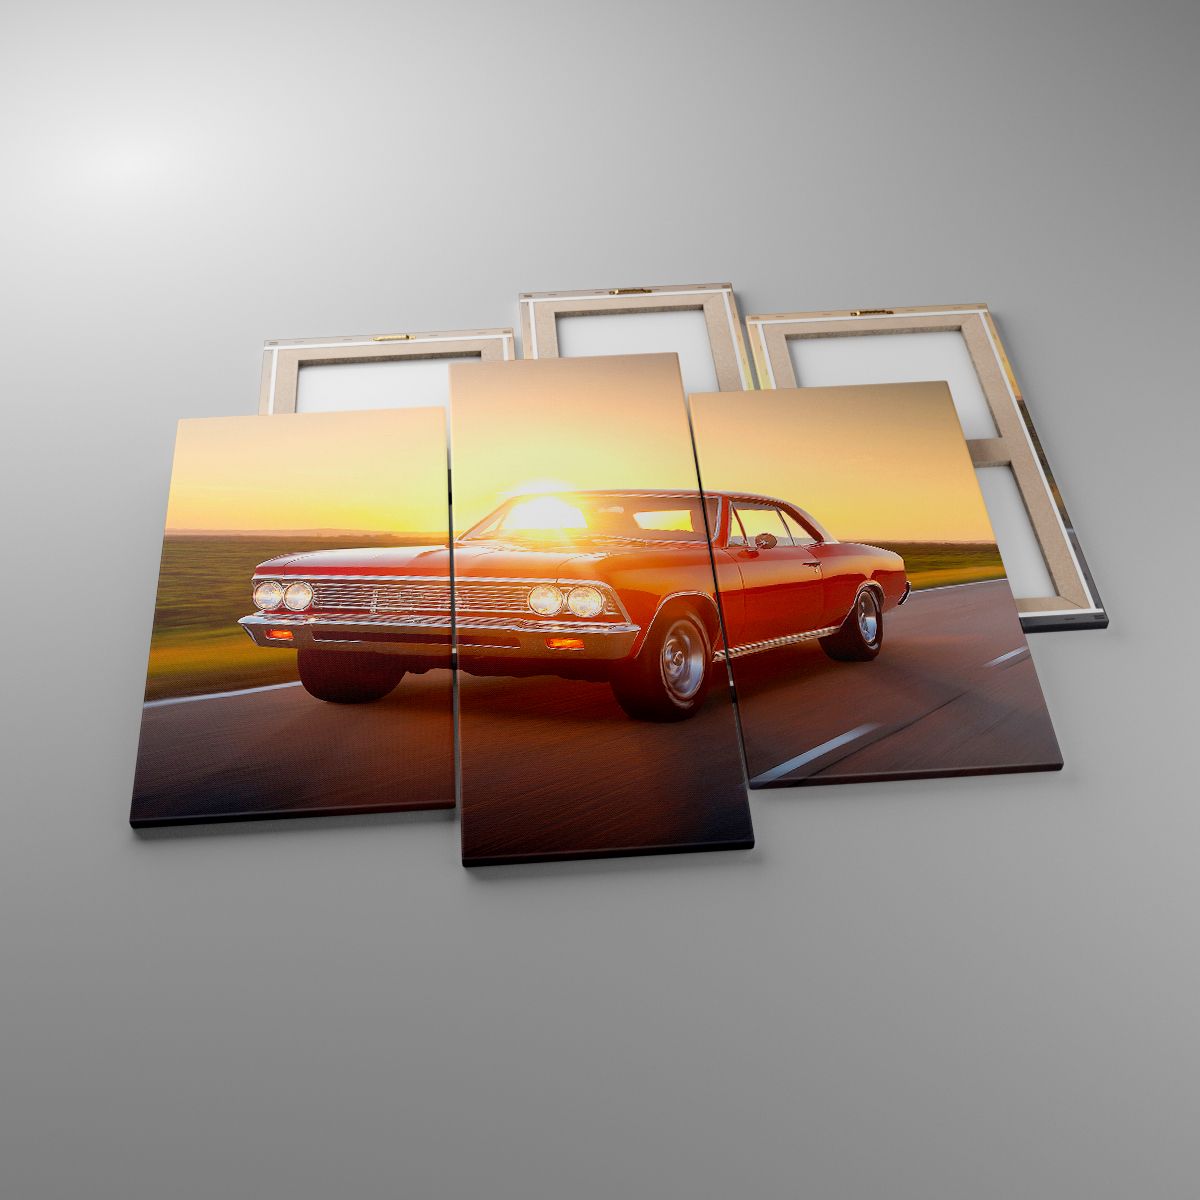 Obrazy Samochód, Obrazy Podróż, Obrazy Vintage, Obrazy Prędkość, Obrazy Motoryzacja